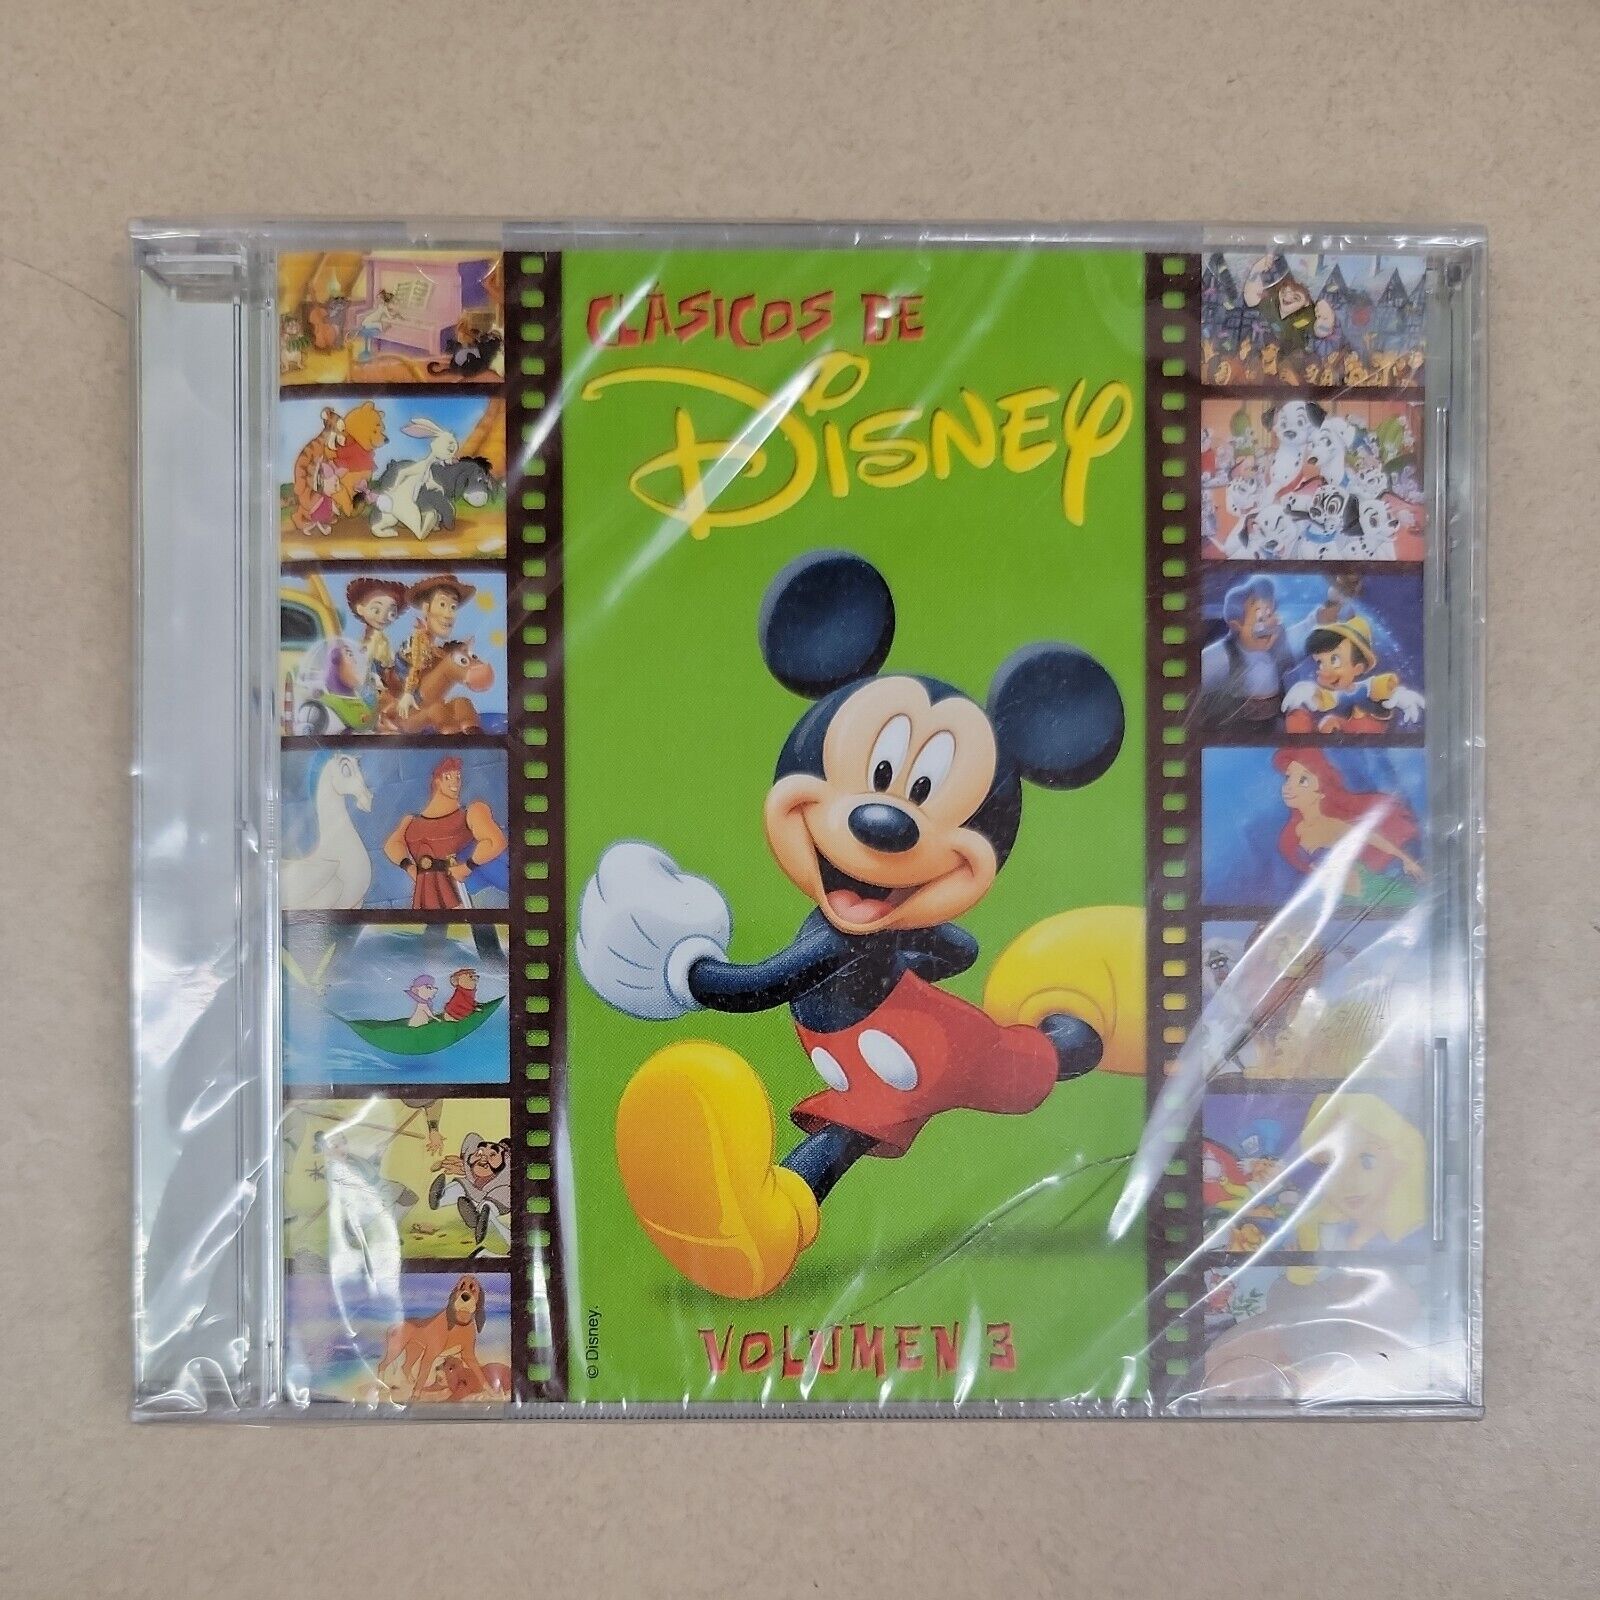 Clasicos De Disney Volumen 3 (CD, 2009)